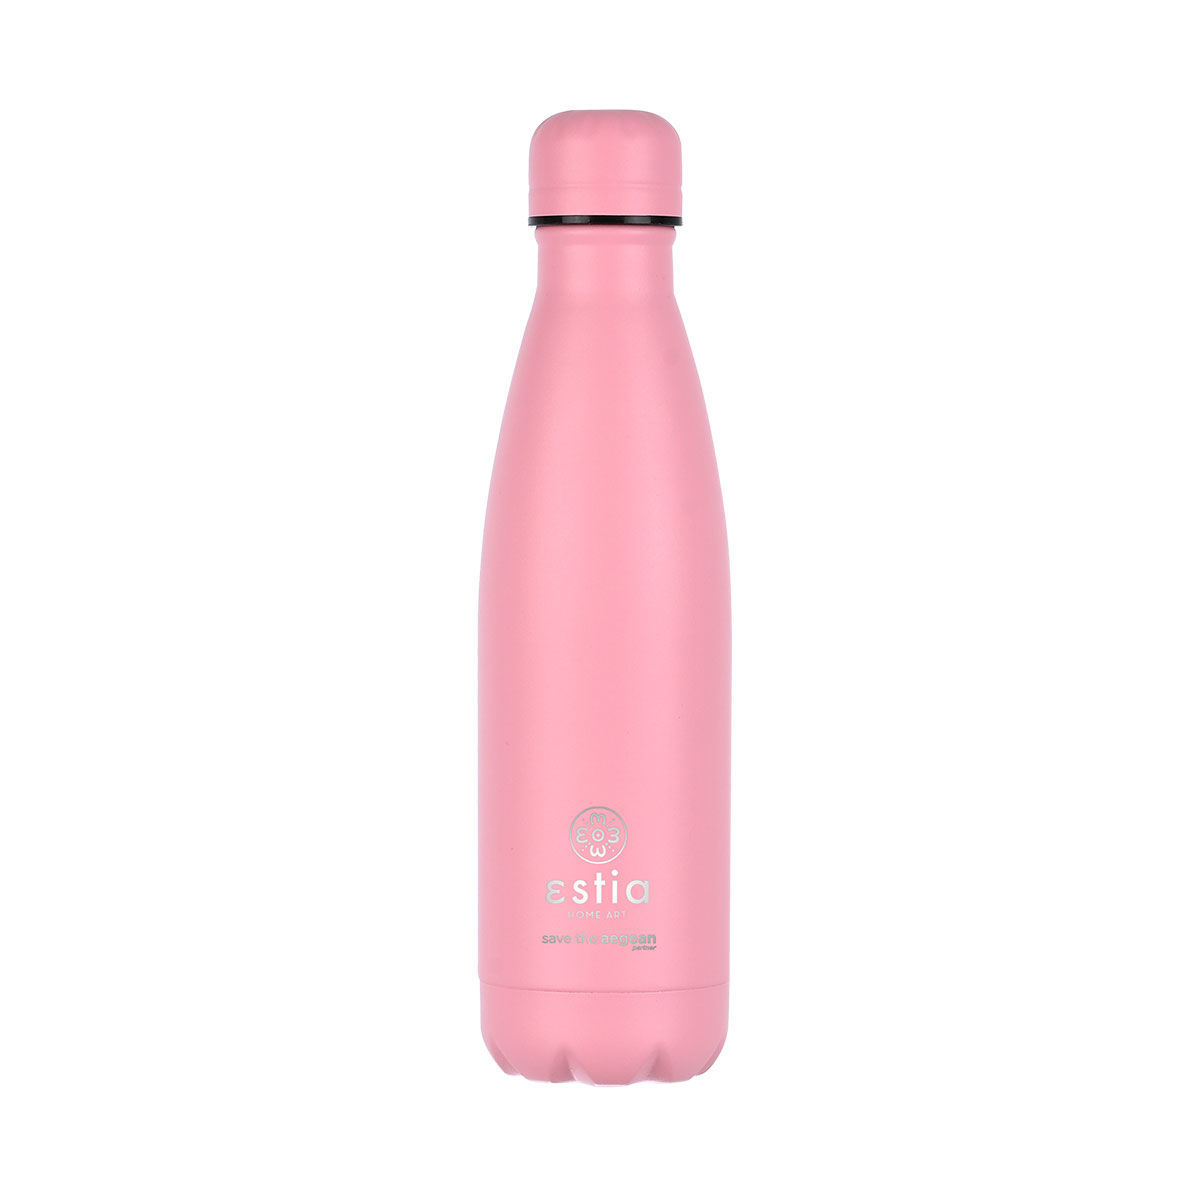 Θερμός-Μπουκάλι Ανοξείδωτο Flask Lite Save The Aegean Blossom Rose Estia 500ml-7x7x26,6εκ. 01-18030 (Υλικό: Ανοξείδωτο, Χρώμα: Ροζ) – estia – 01-18030